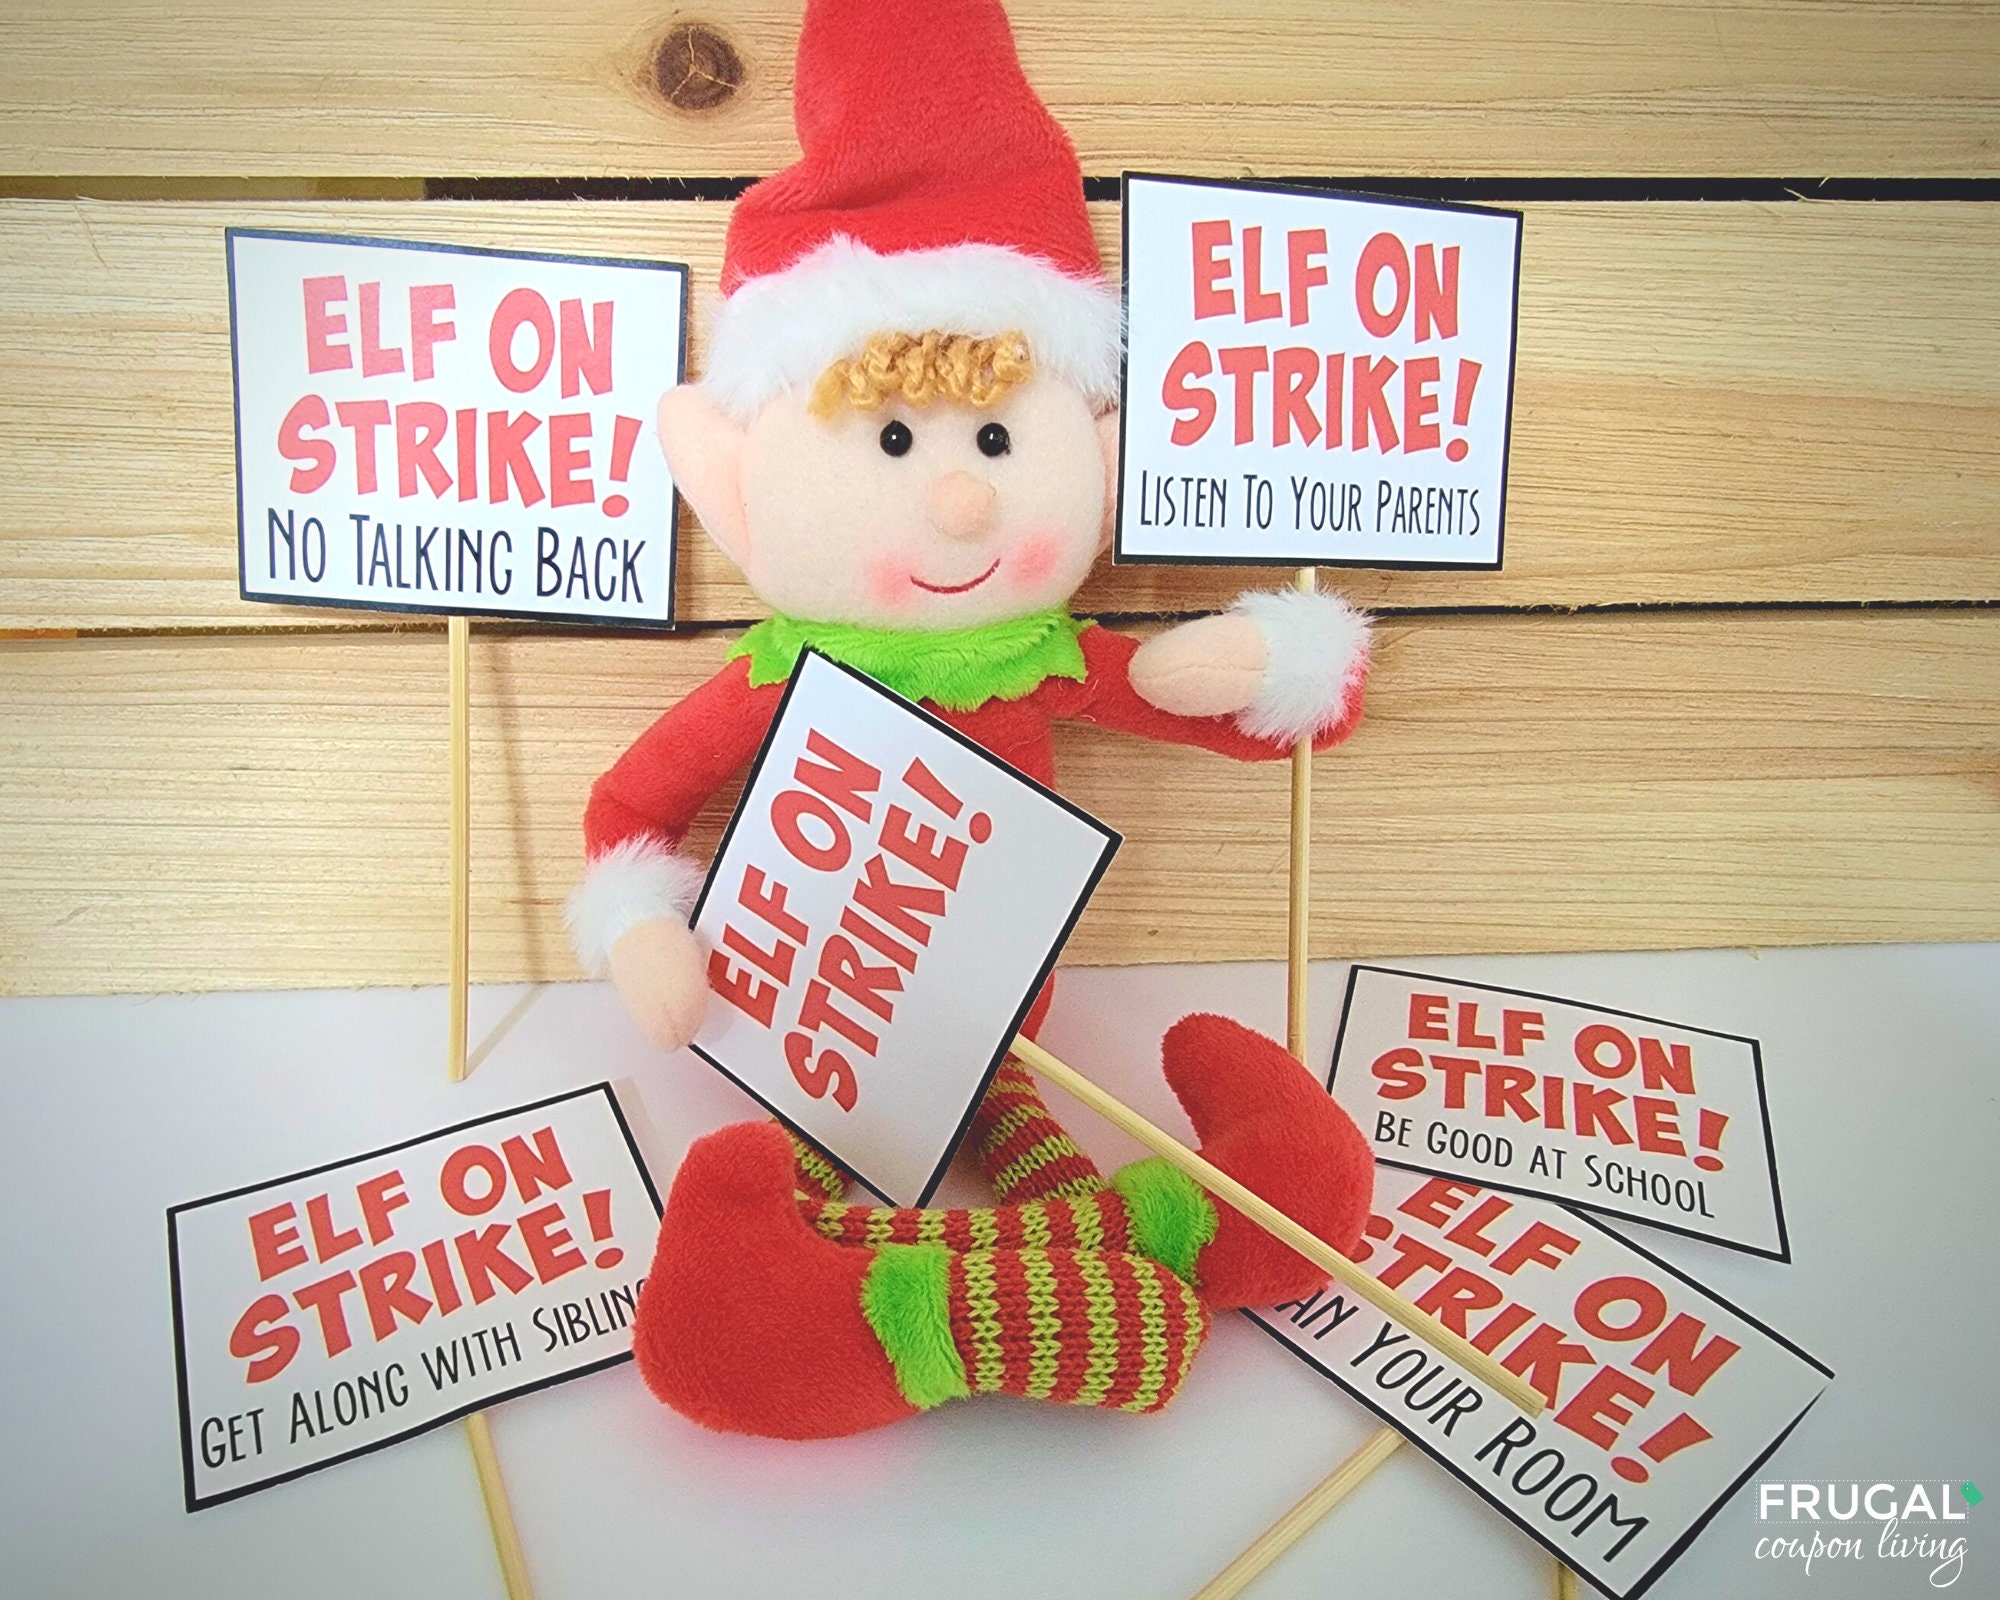 elf-on-strike-signs-6-elf-behavior-letters-official-notice-etsy-uk